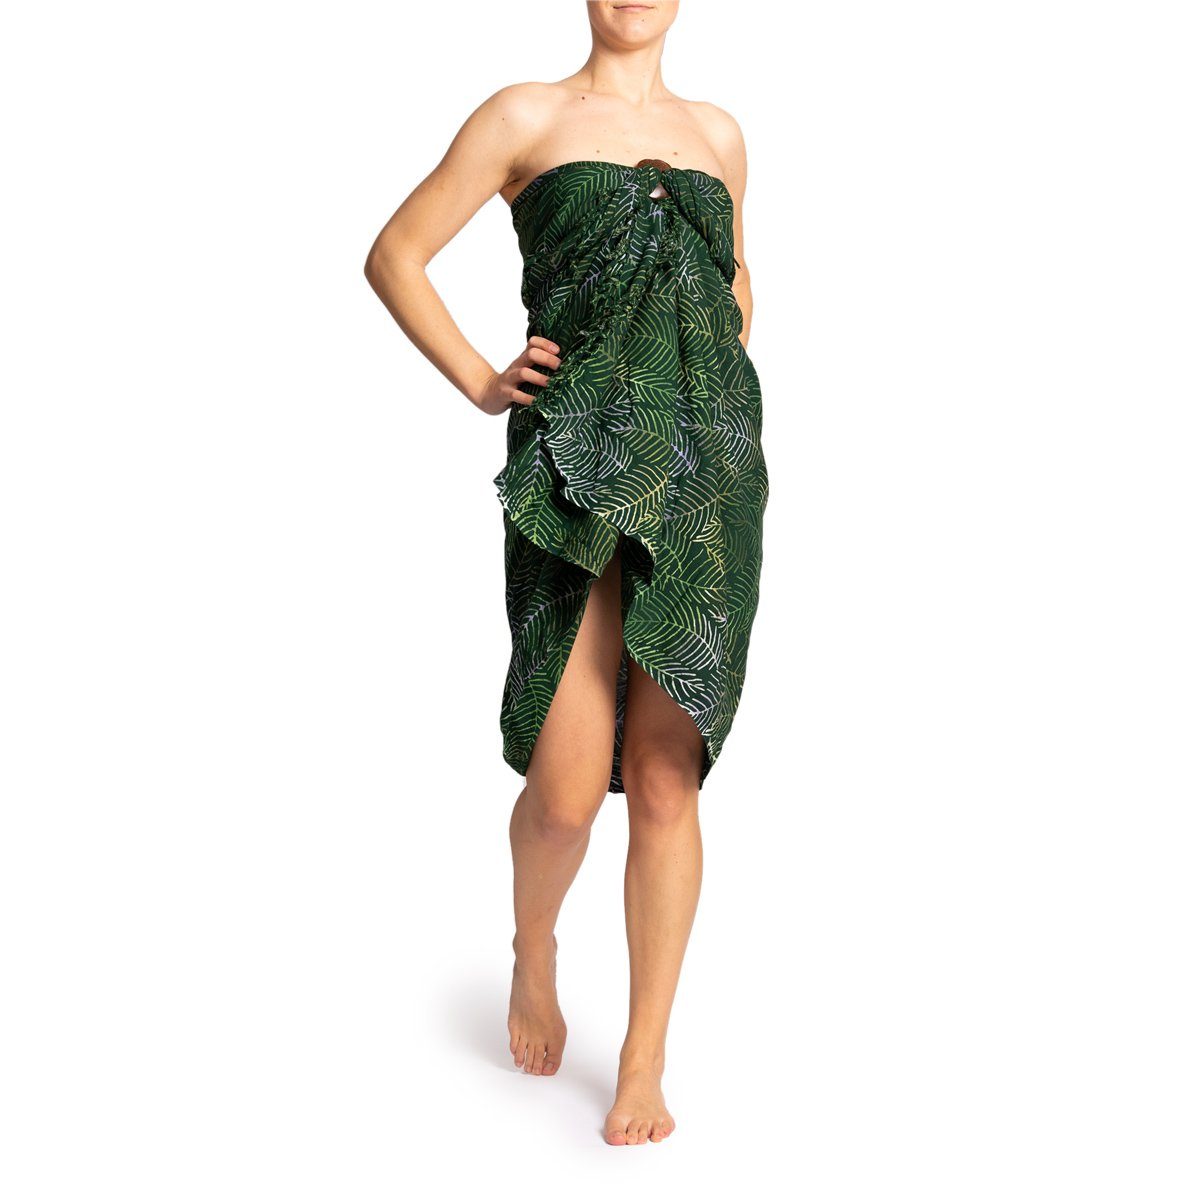 den B201 hochwertiger PANASIAM Tuch Sarong Halstuch Strand Strandkleid Pareo palm für Schultertuch Cover-up Strandtuch, Wachsbatik green Viskose Bikini aus Grüntöne